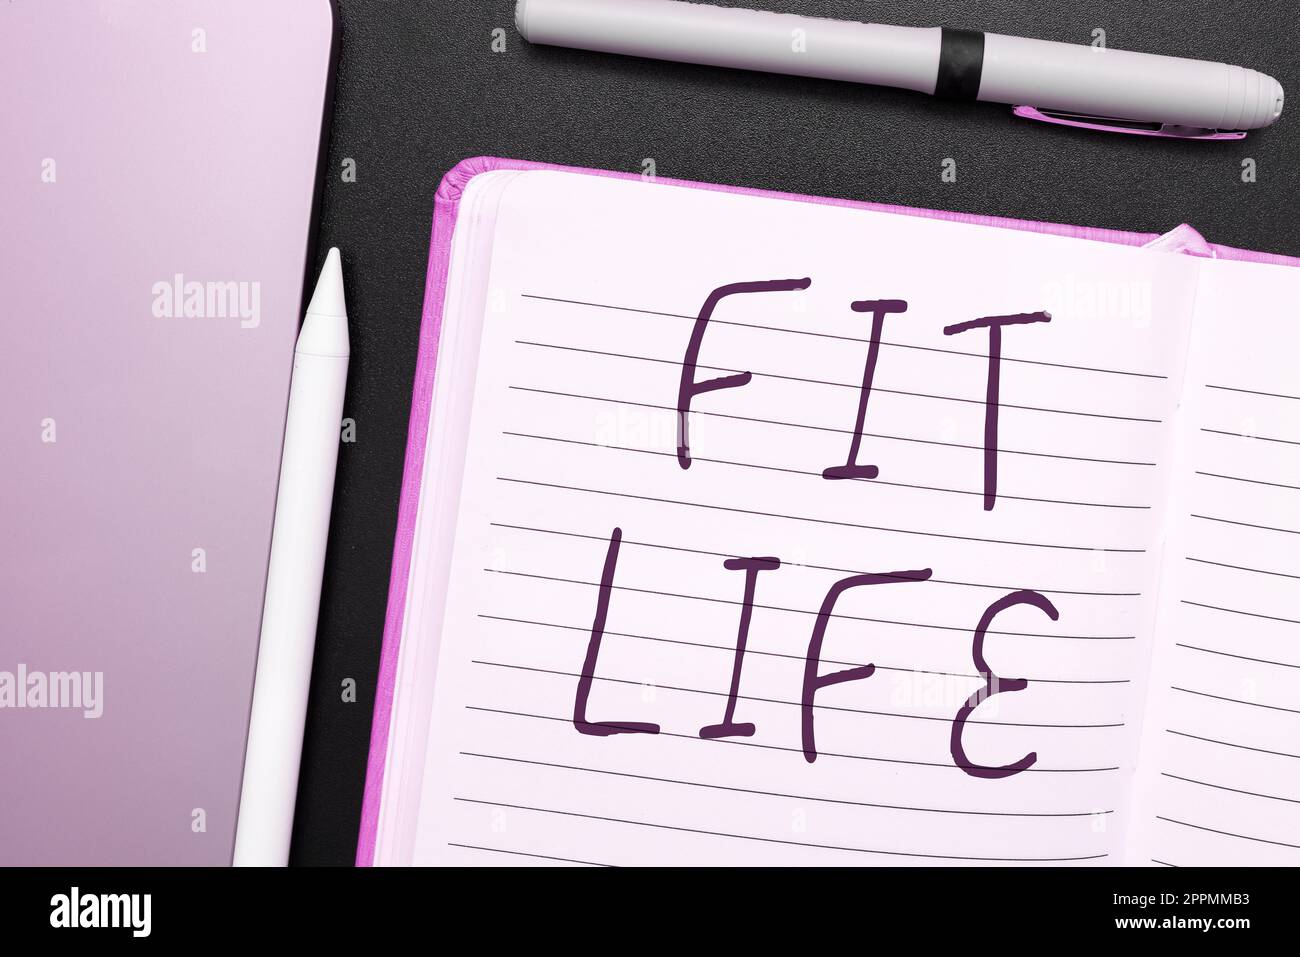 Handschriftliches Schild Fit Life. Geschäftsidee Aufrechterhaltung eines gesunden Körpergewichts mit Diät und Bewegung gesundes Leben Stockfoto